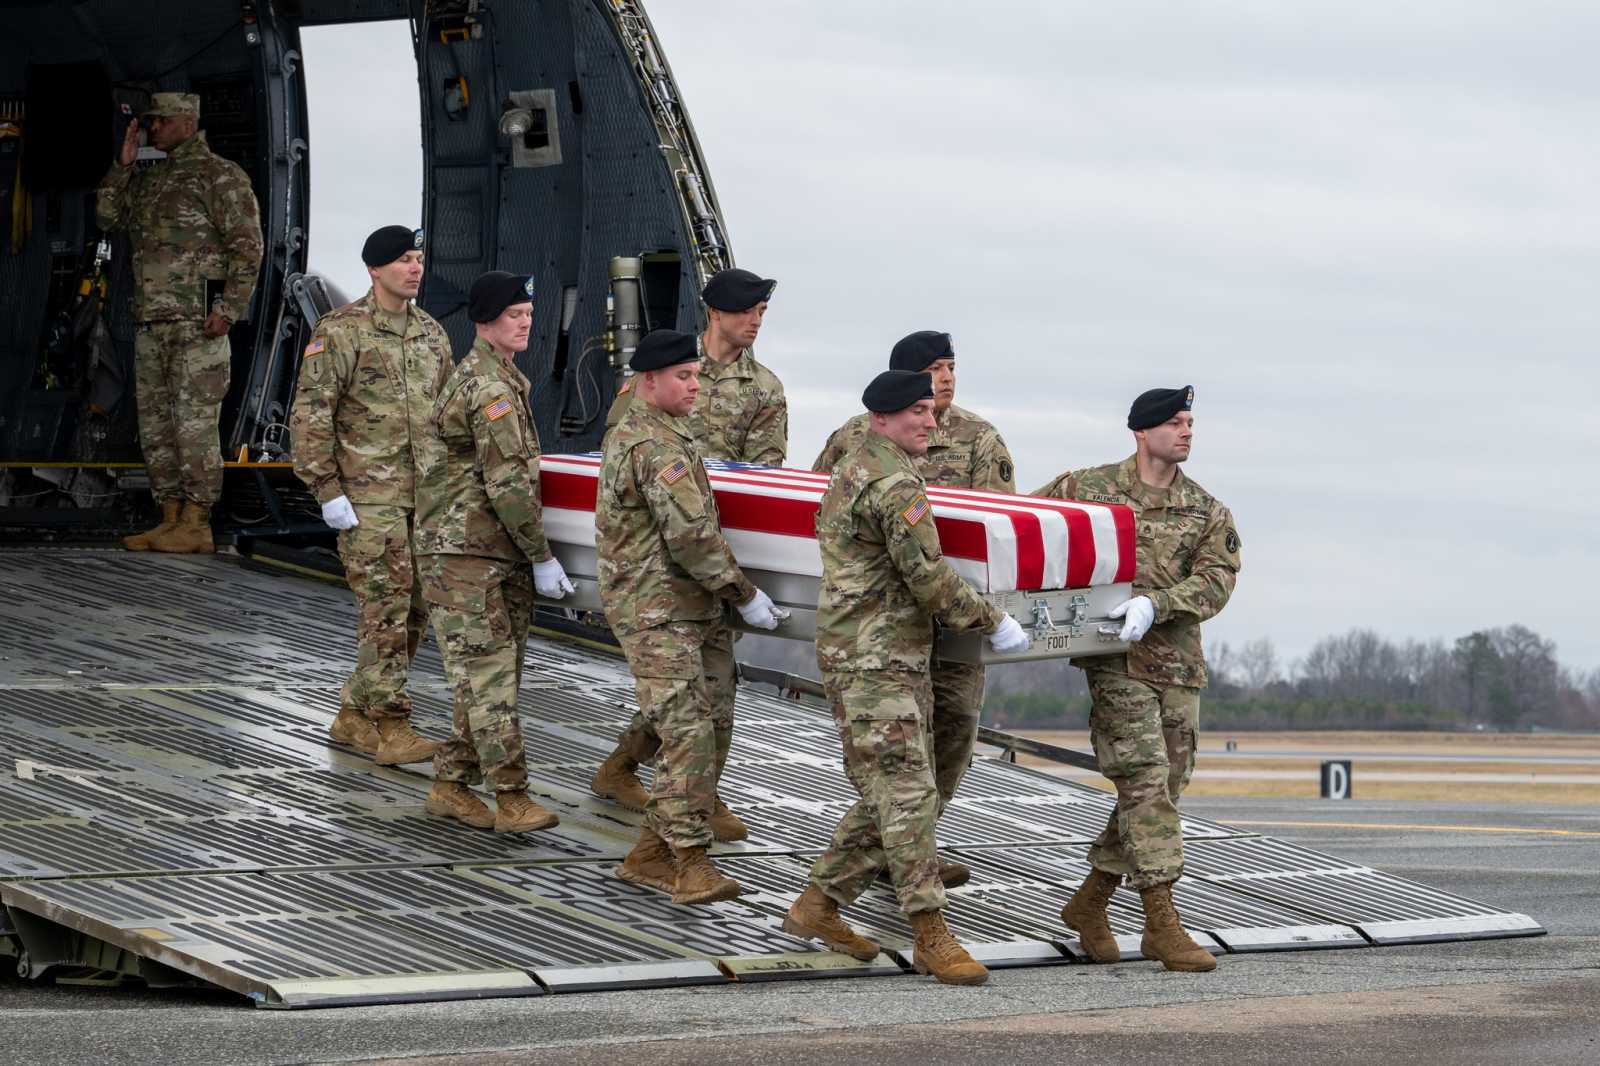 Elhunyt amerikai katonát szállítanak haza | Fotó: Egyesült Államok Hadseregének Facebook oldala